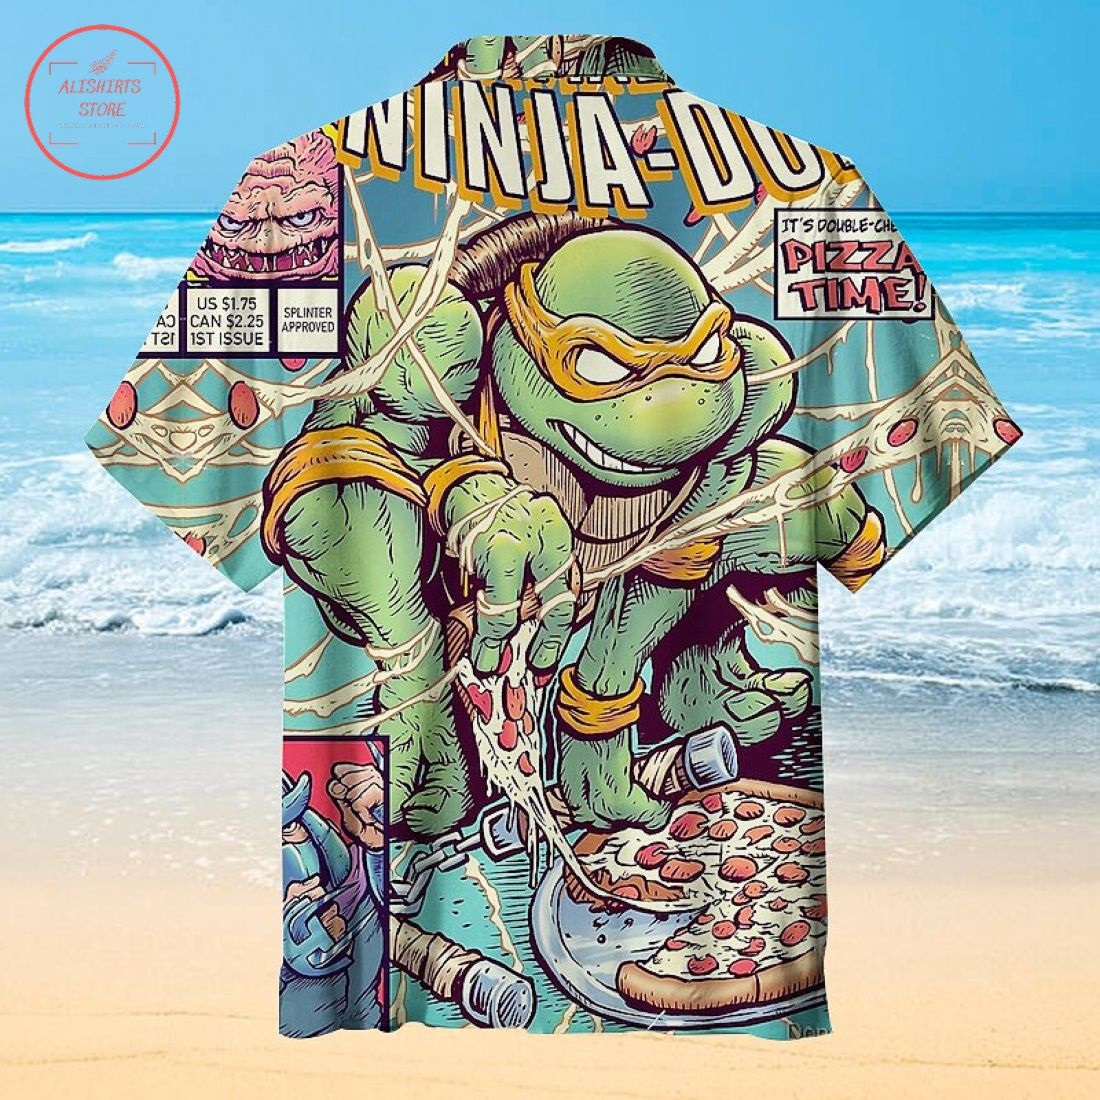 The Amazing Ninja Turtles Hawaiian shirt